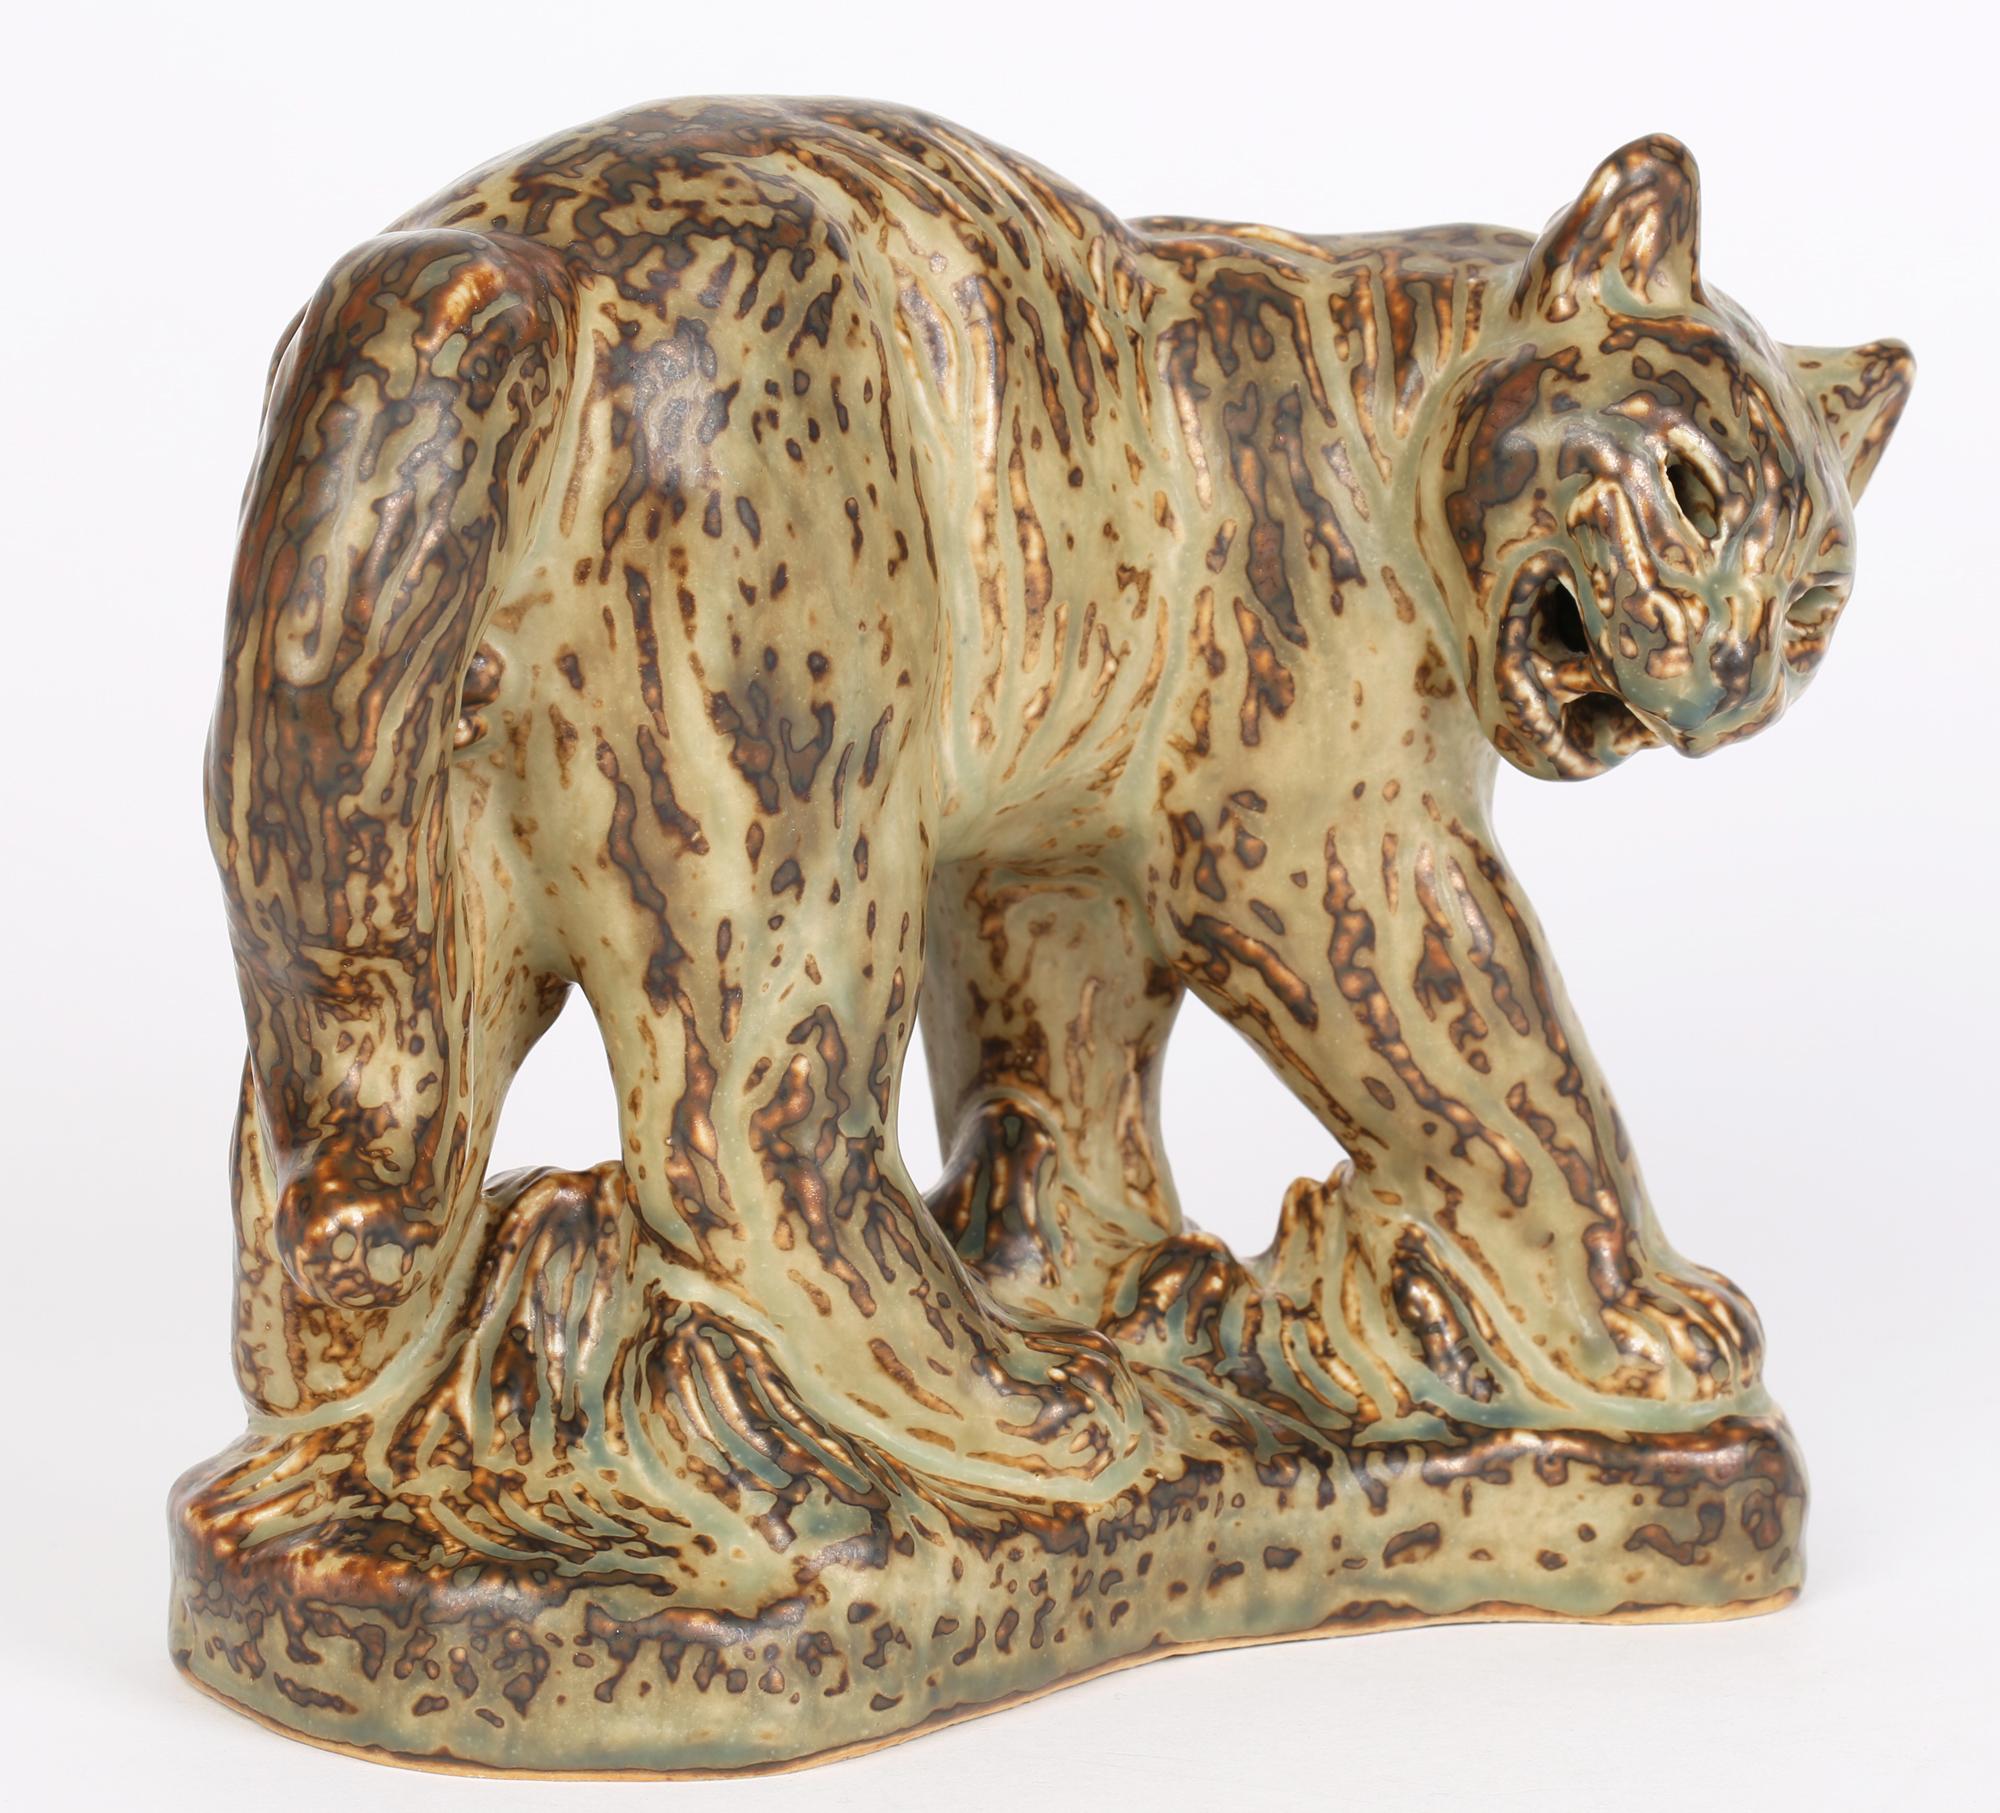 Une grande et étonnante figure sculpturale en porcelaine royale danoise de Copenhague représentant un Puma par le célèbre artiste animalier Khud Kyhn (danois, 1880-1969), conçue vers 1935. La sculpture, lourdement réalisée, repose sur une base